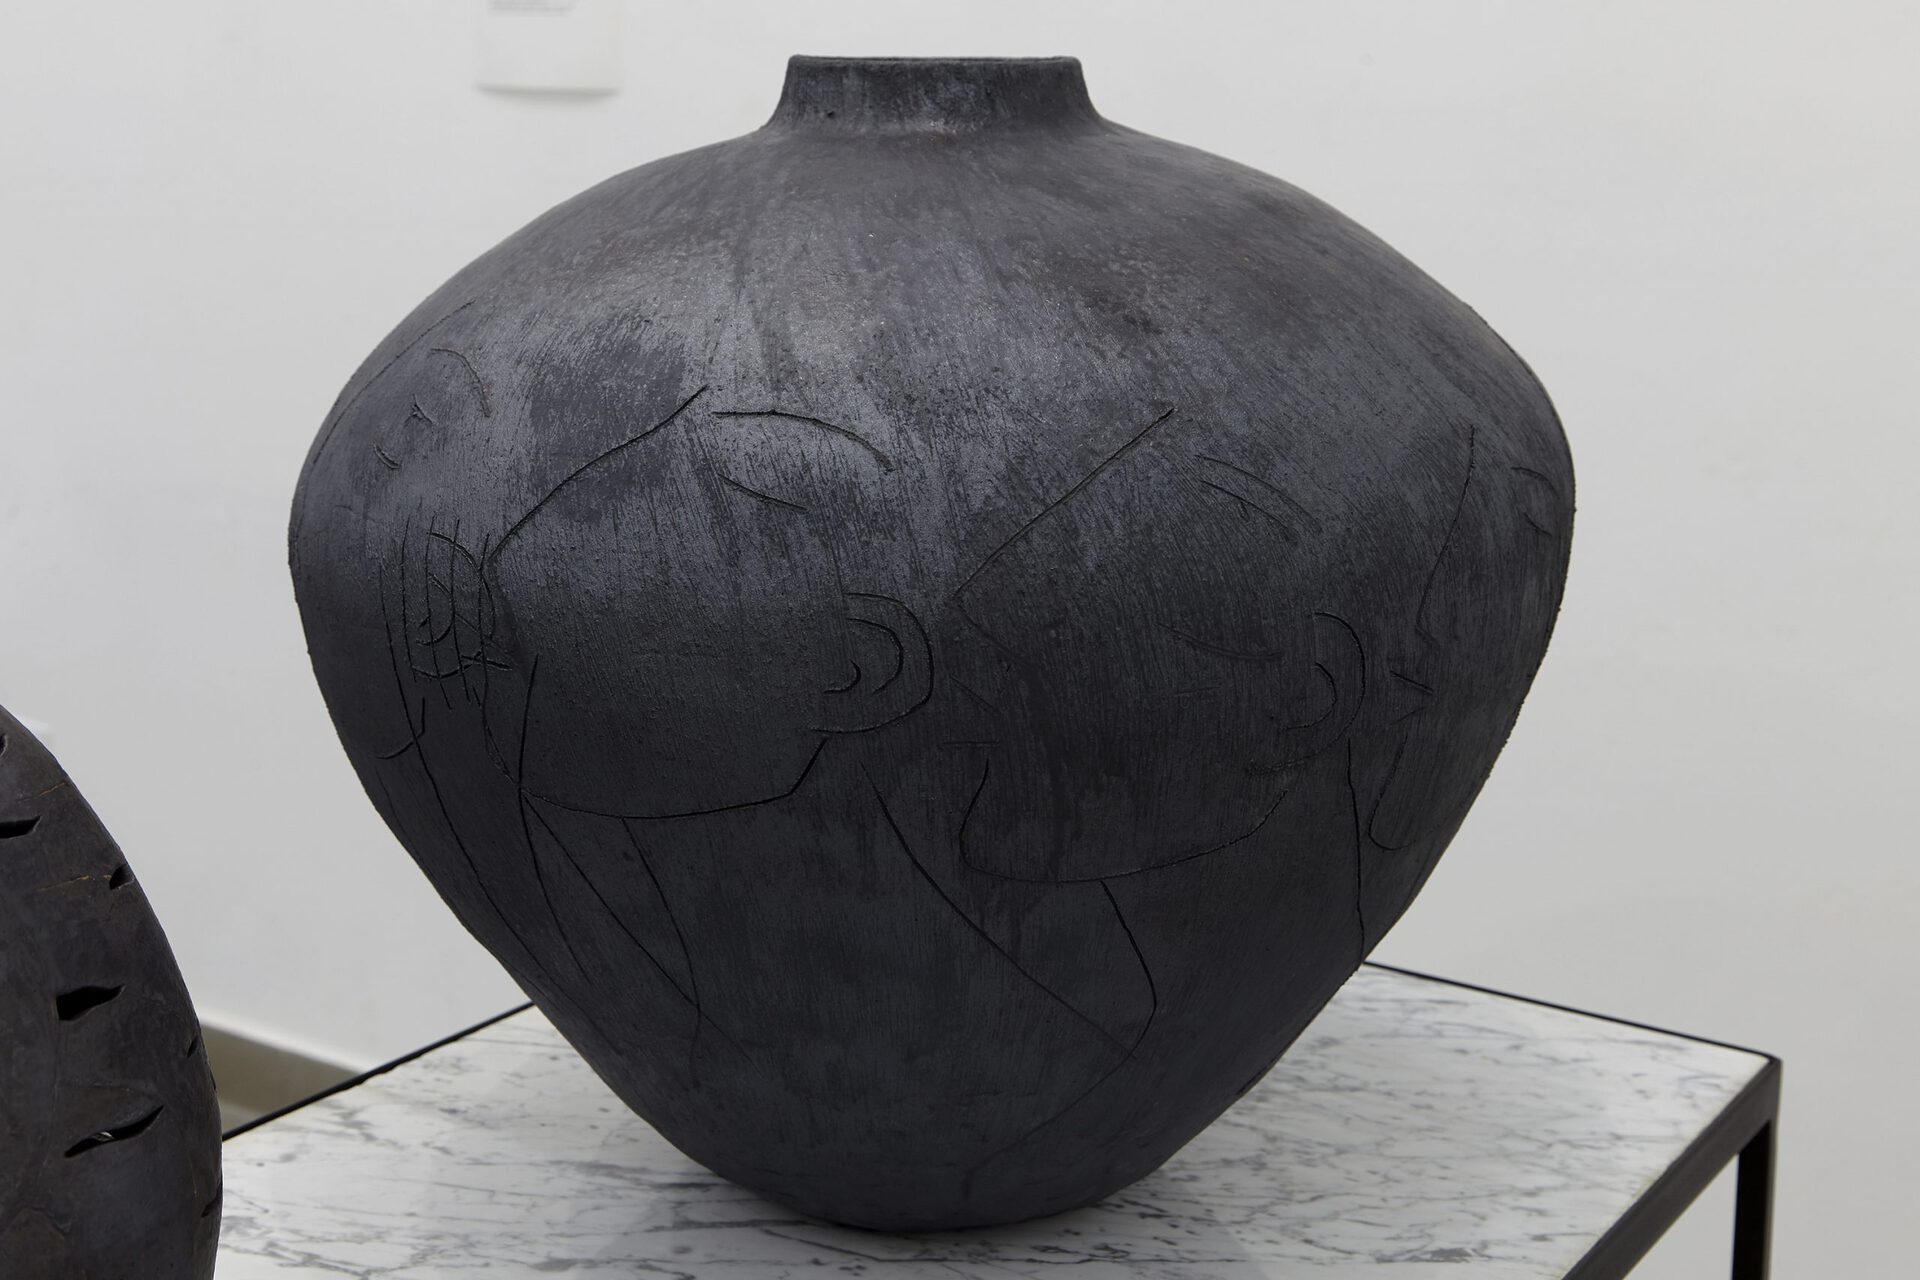 Sári Ember: Secret not secret, 2020, ceramics, 47x51x51 cm, Photo: Sári Ember, courtesy of Ani Molnár Gallery